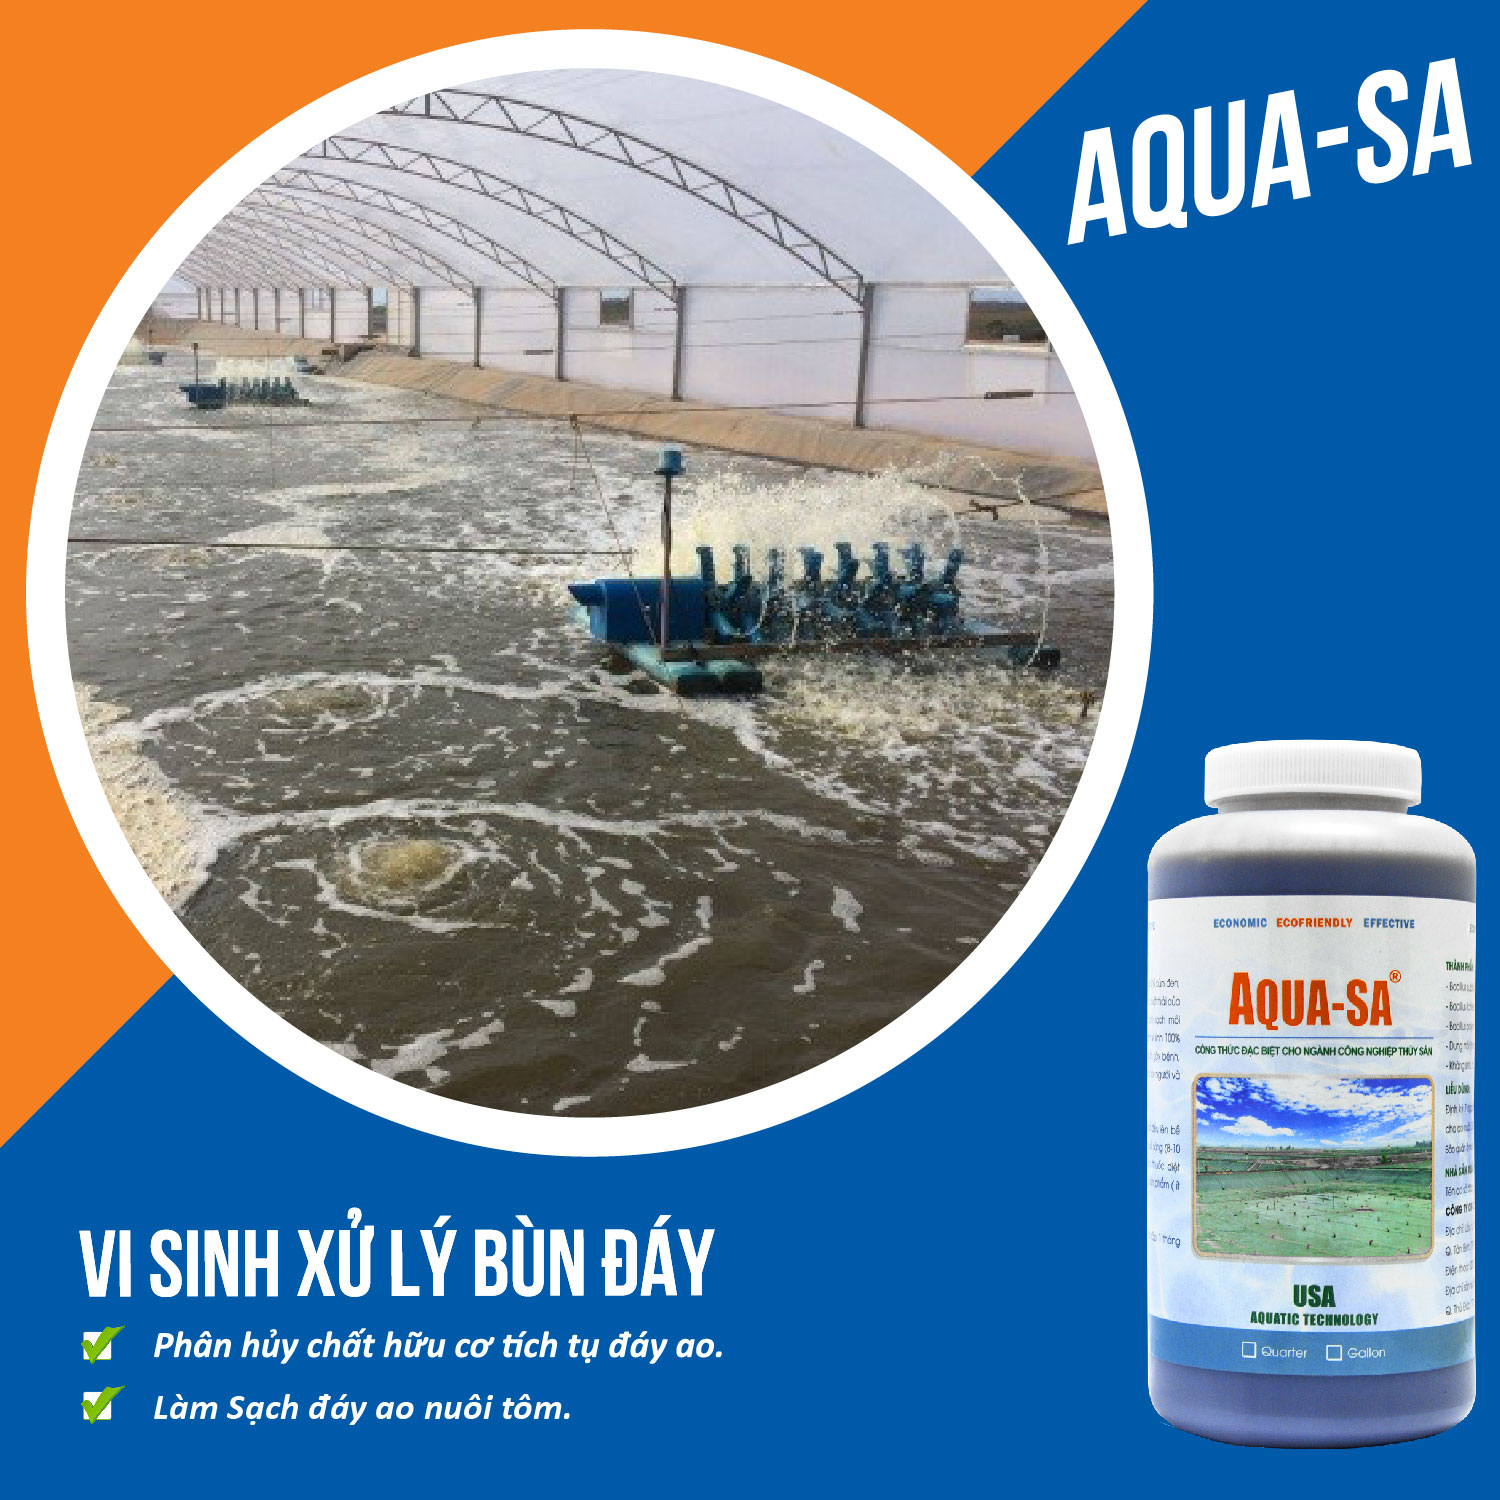 AQUA-SA - Vi sinh xử lý bùn đáy ao nuôi trồng thủy sản - Chai 1 quarter (≈ 1 lít)